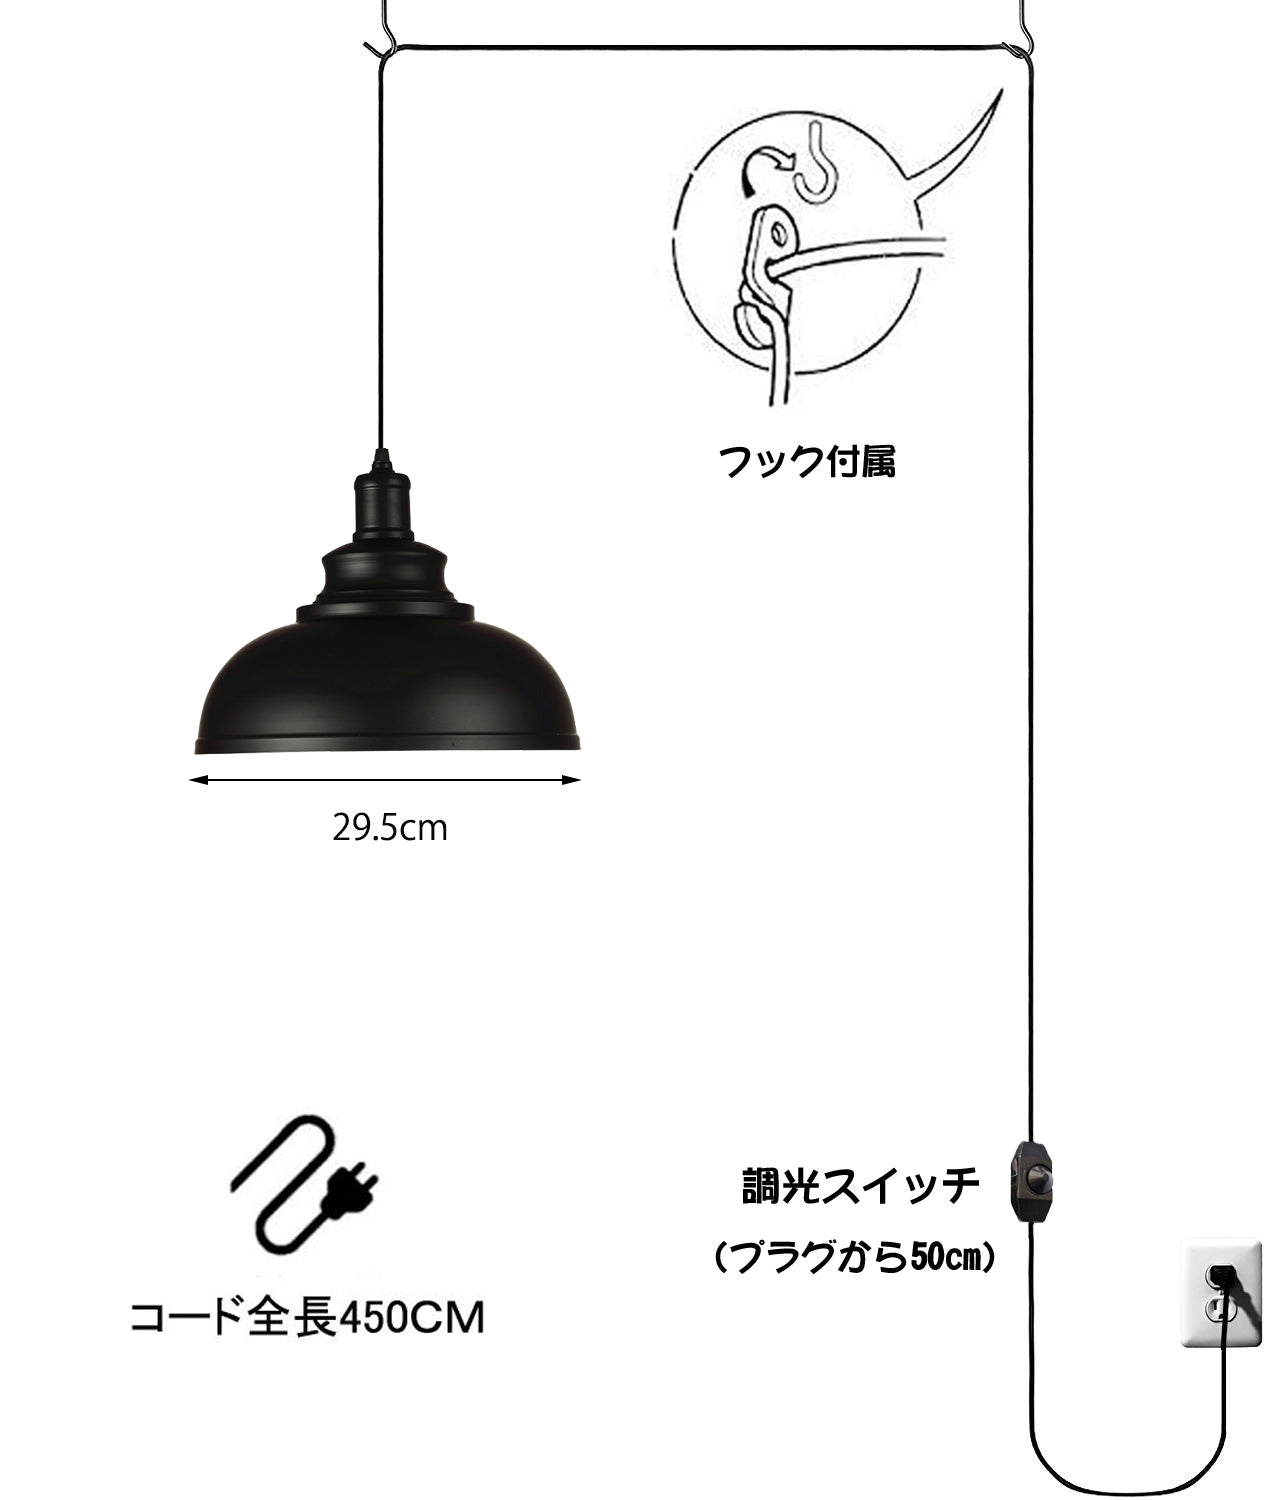 FSLiving コンセント式ペンダントライト   調光対応 レトロペンダント 照明器具 工事不要 賃貸照明 コード長さ4.5m